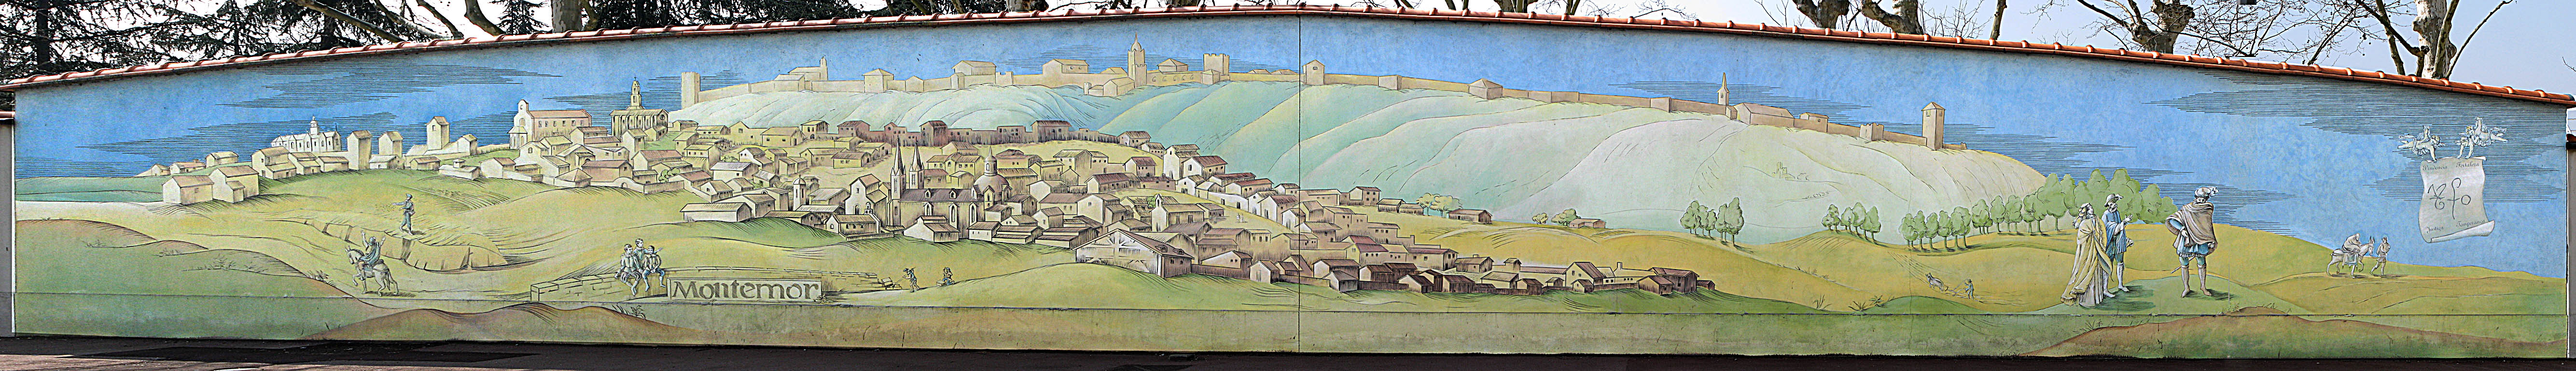 PORTUGAL, Montemor-O-Novo, 1495, Naissance de Saint Jean de Dieu -  Fresque du Demi-Millénaire  290 route de vienne Lyon 8ème